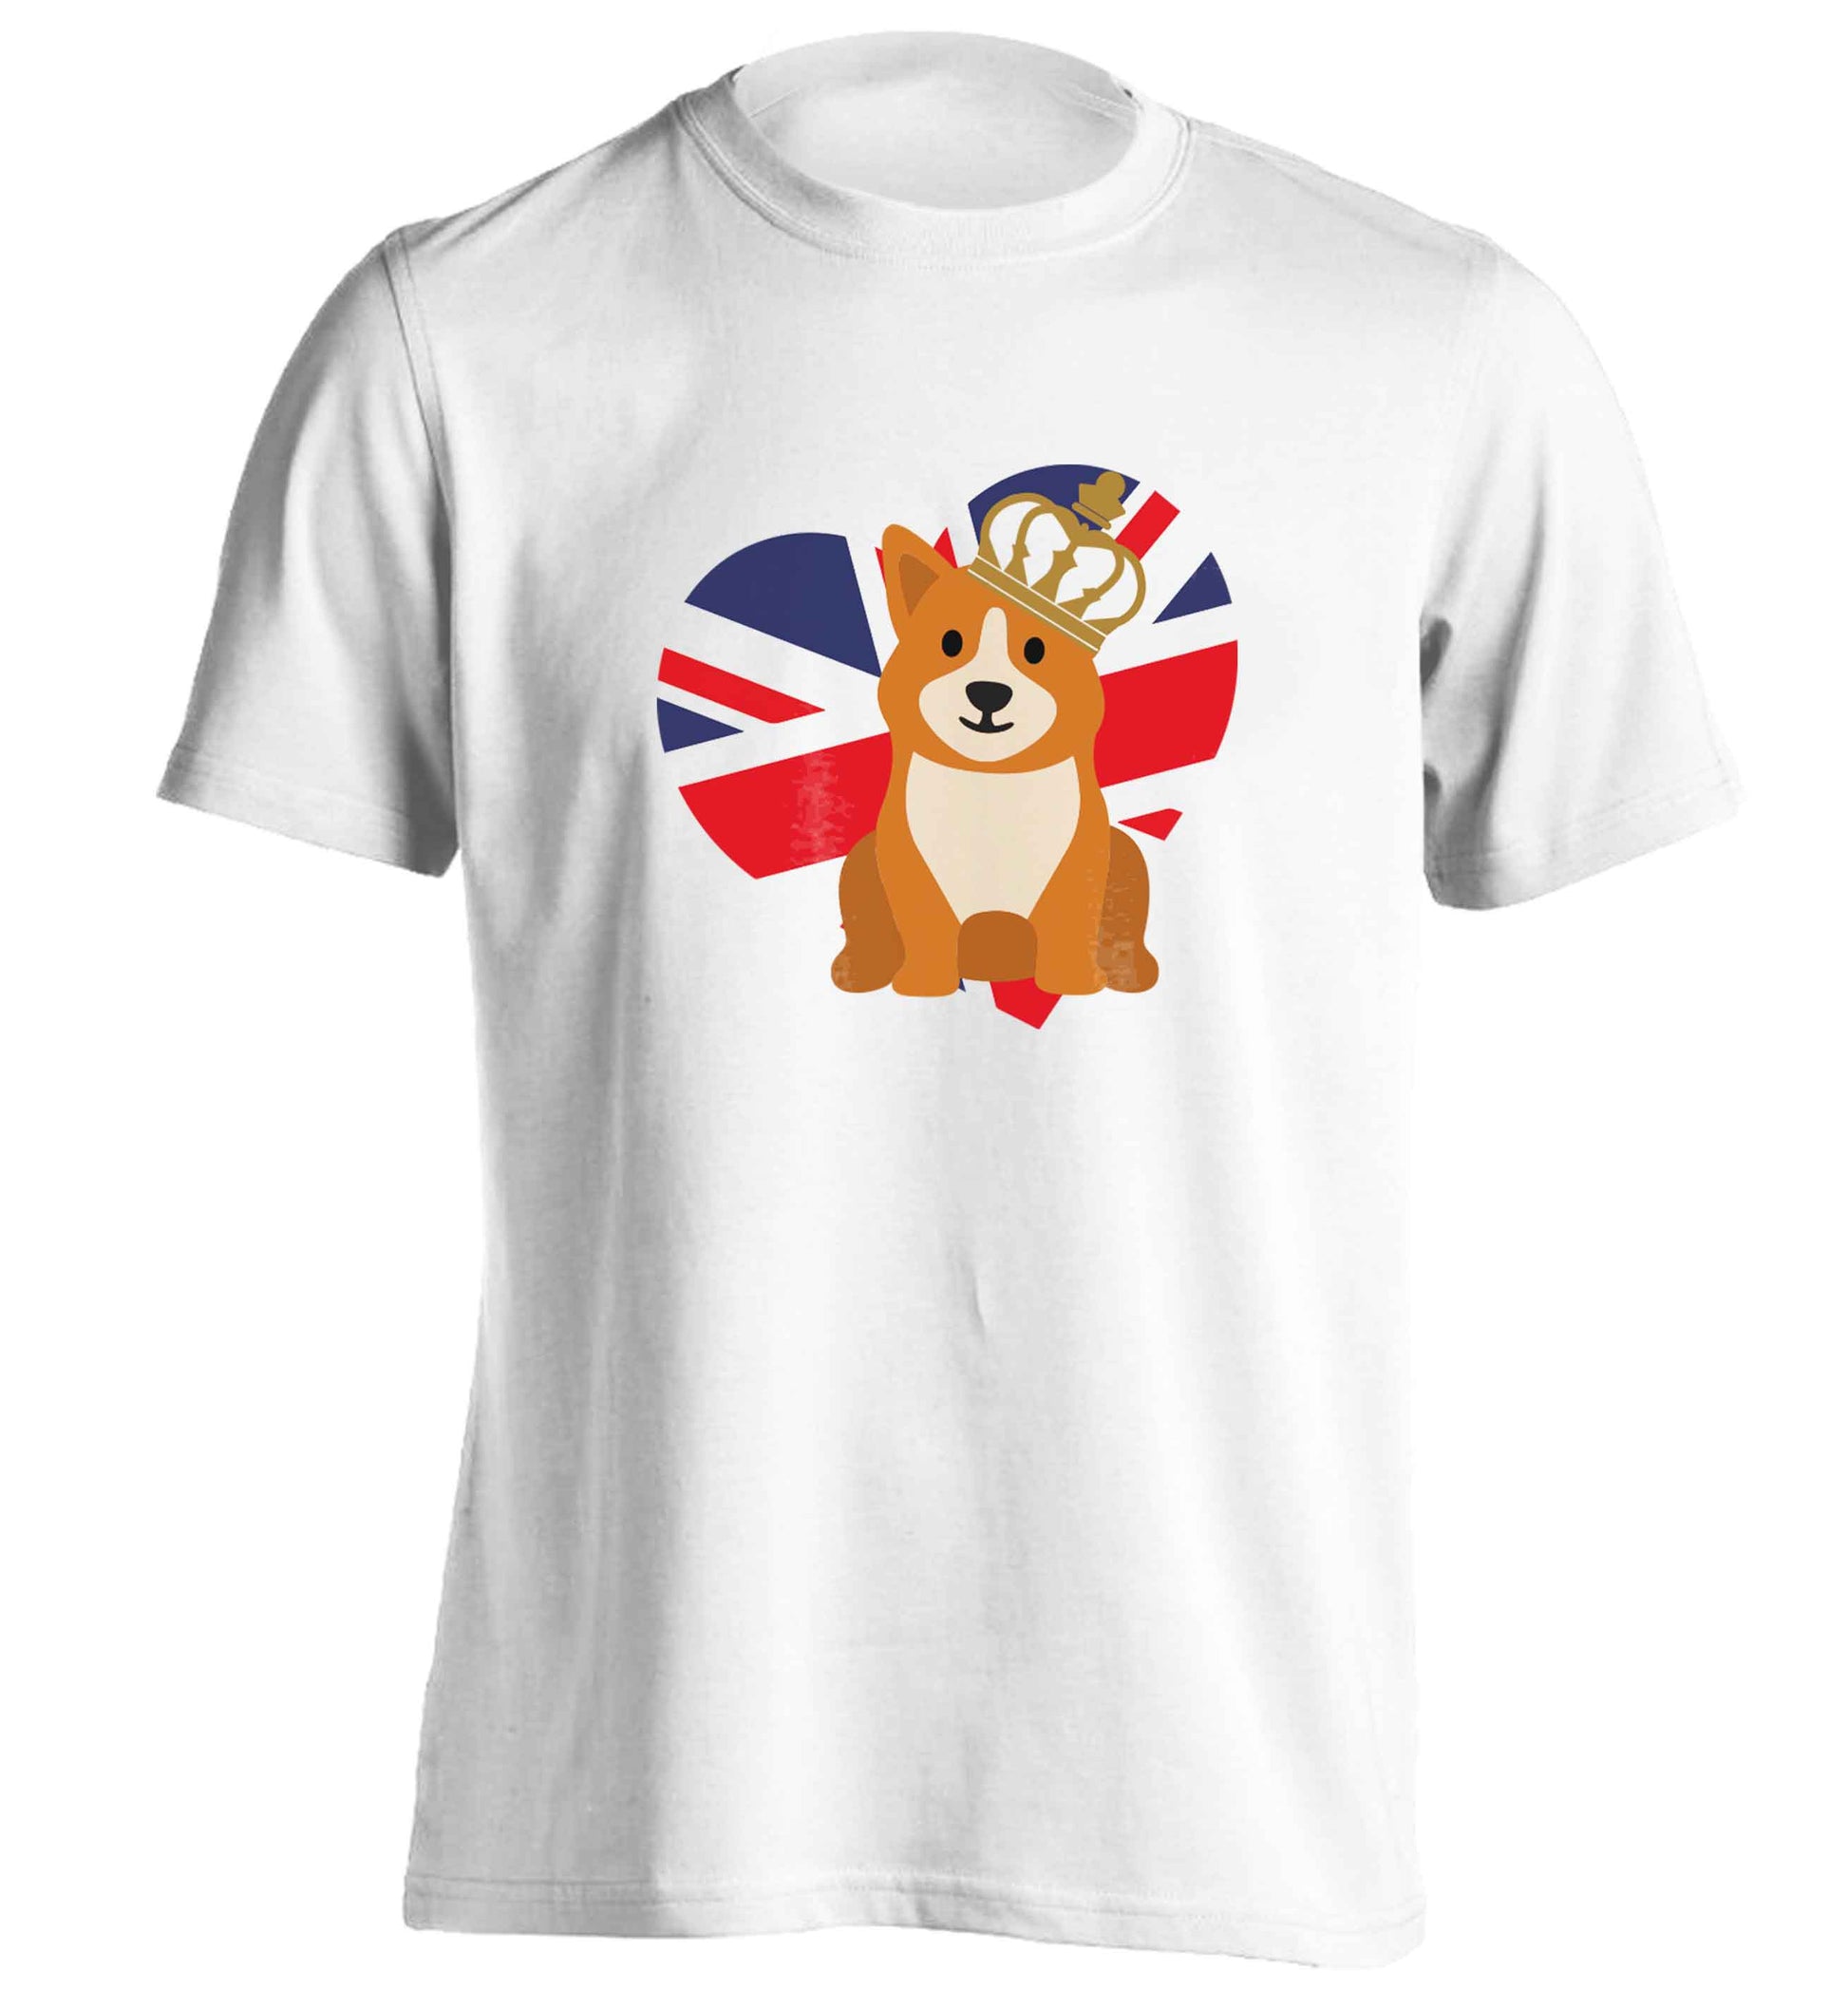 British corgi and flag adults unisex white Tshirt 2XL